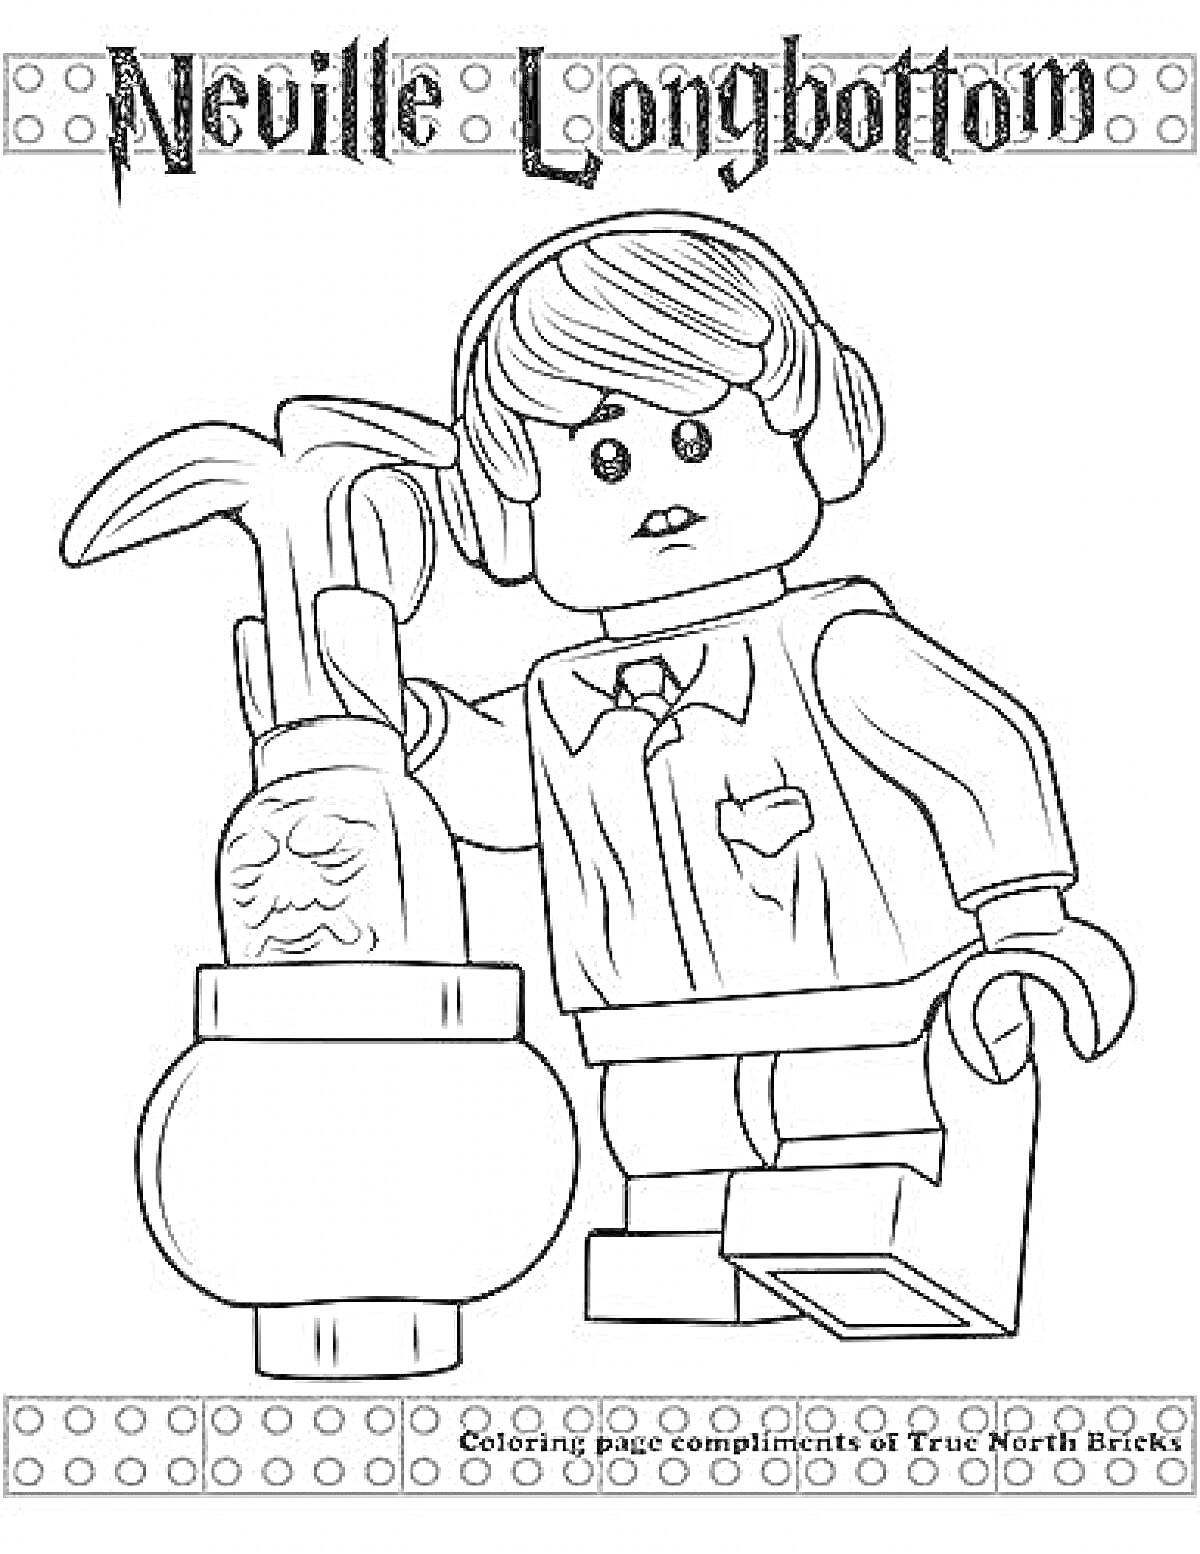 Раскраска Лего Невилл Лонгботтом с мандрагорой в горшке